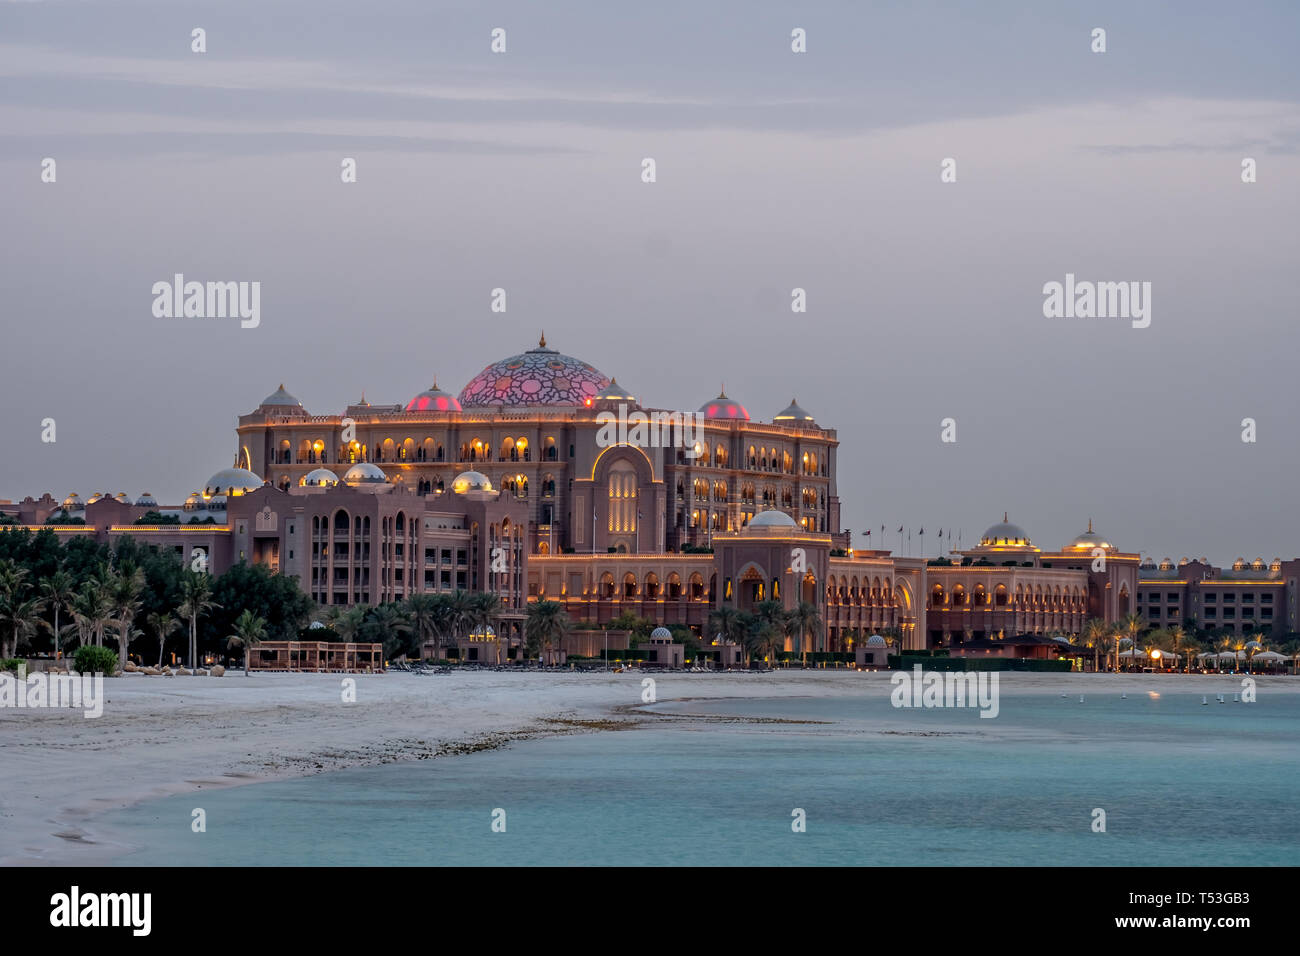 Evening view of Emirates Palace, Abu Dhabi, UAE Stock Photo